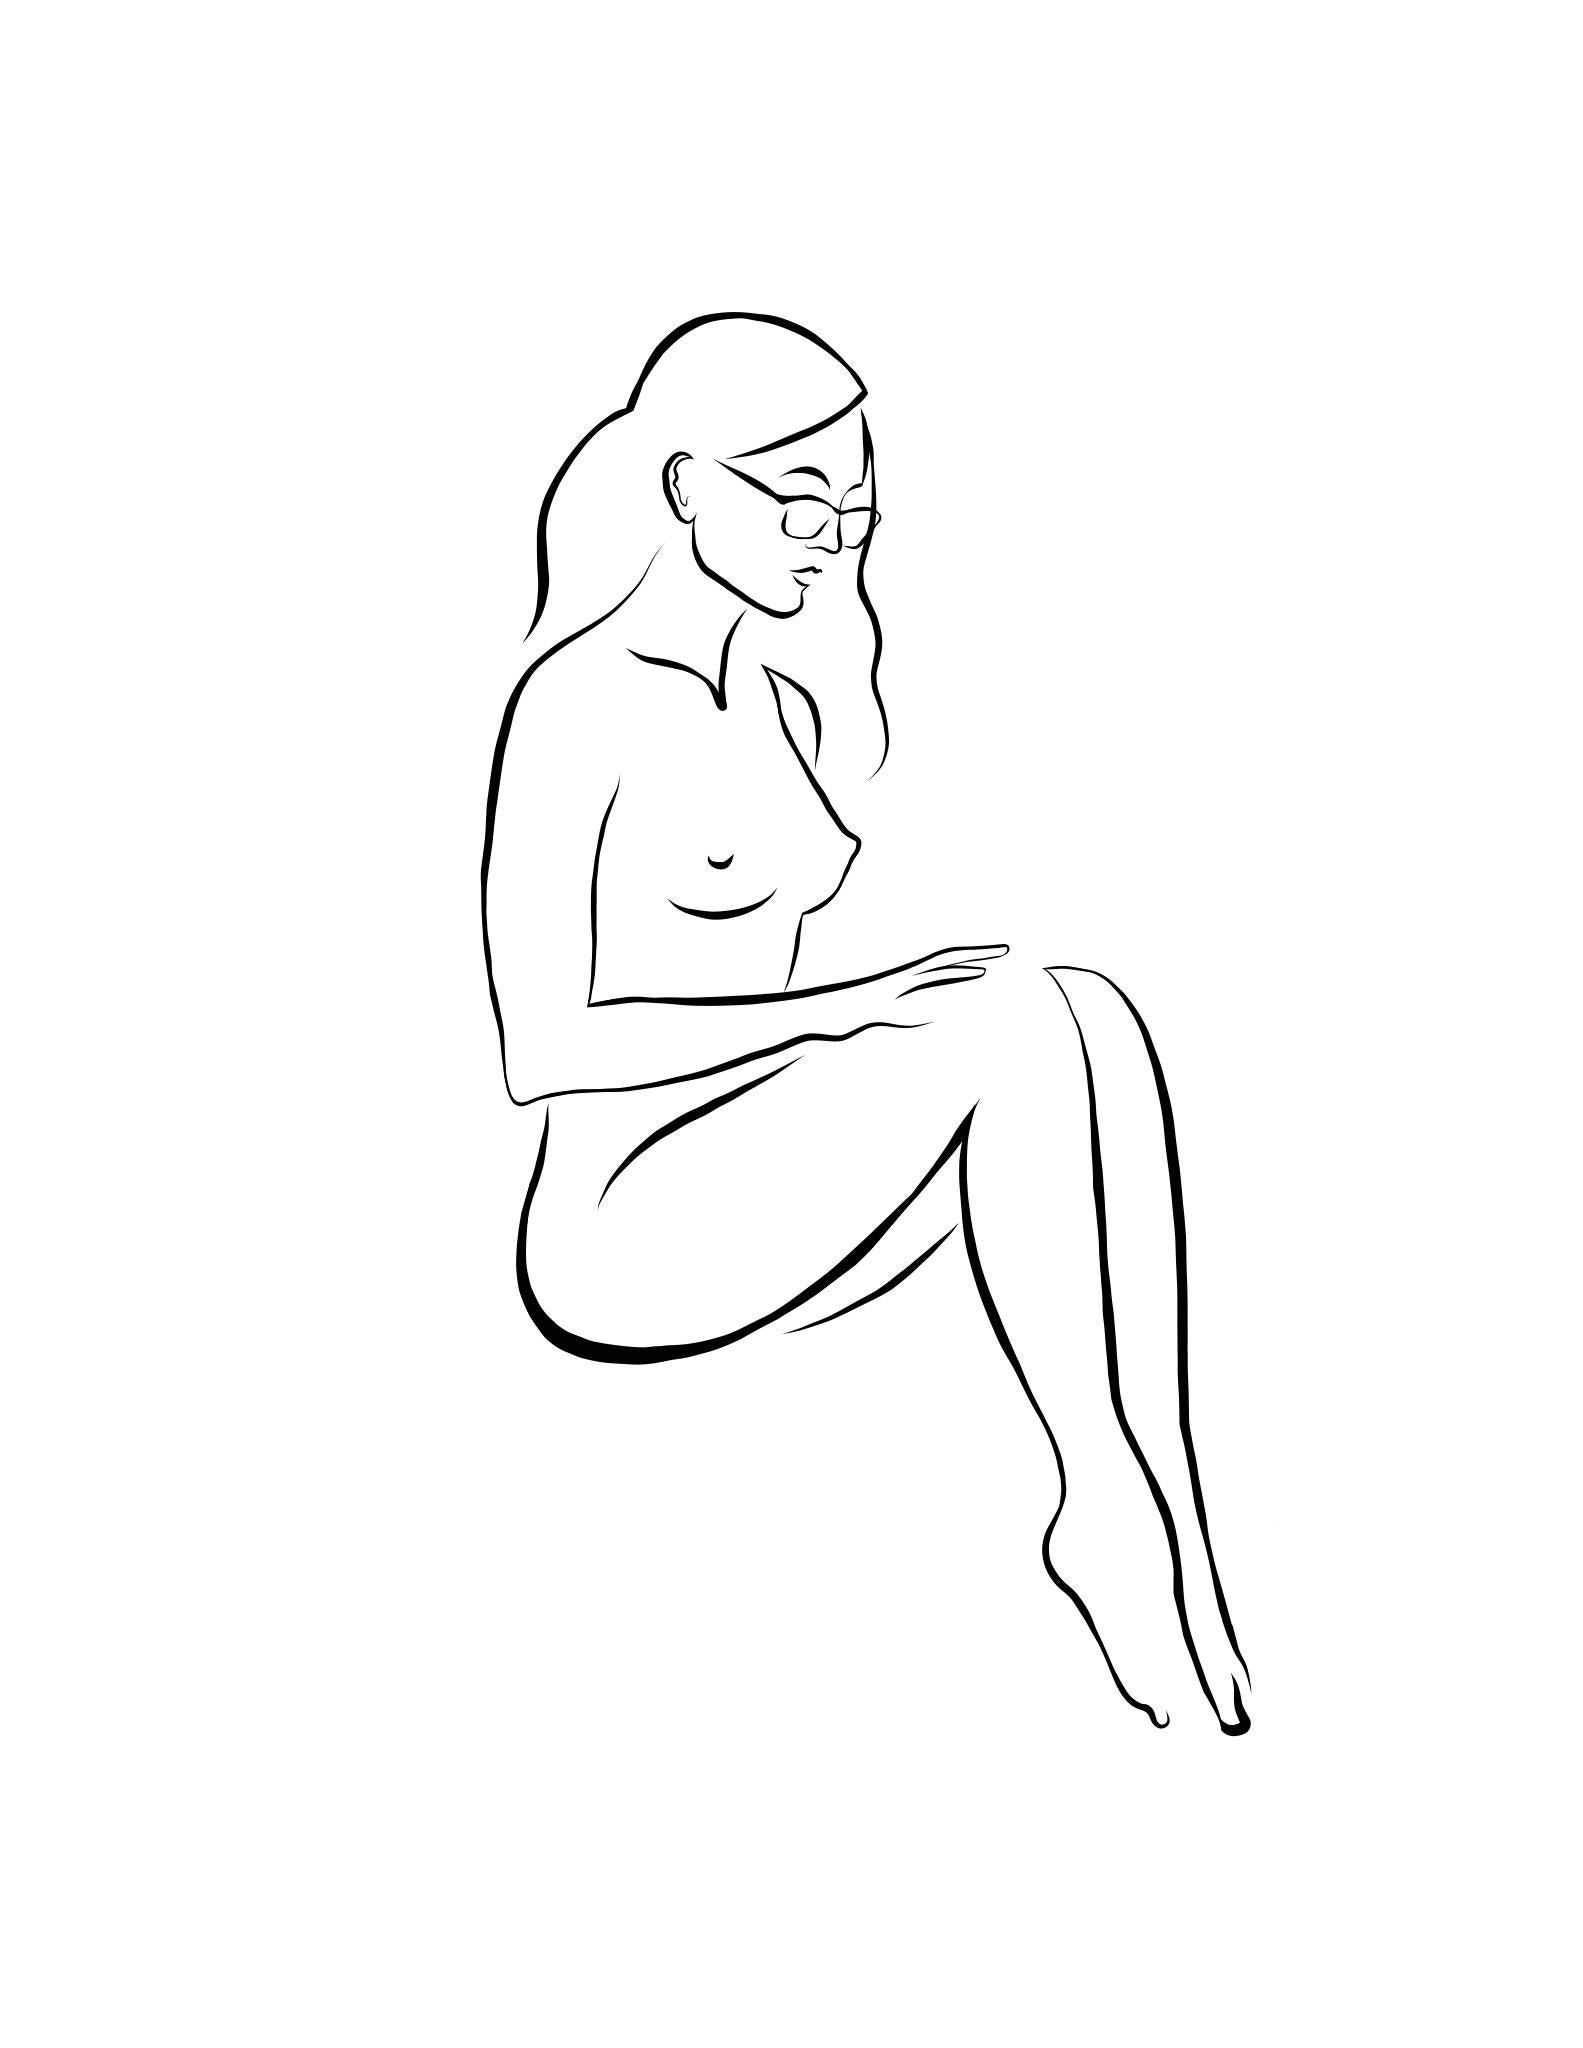 Michael Binkley Nude Print - Haiku #52, 1/50 - Digital Vector Drawing Seated Female Nude Woman Figure Glasses